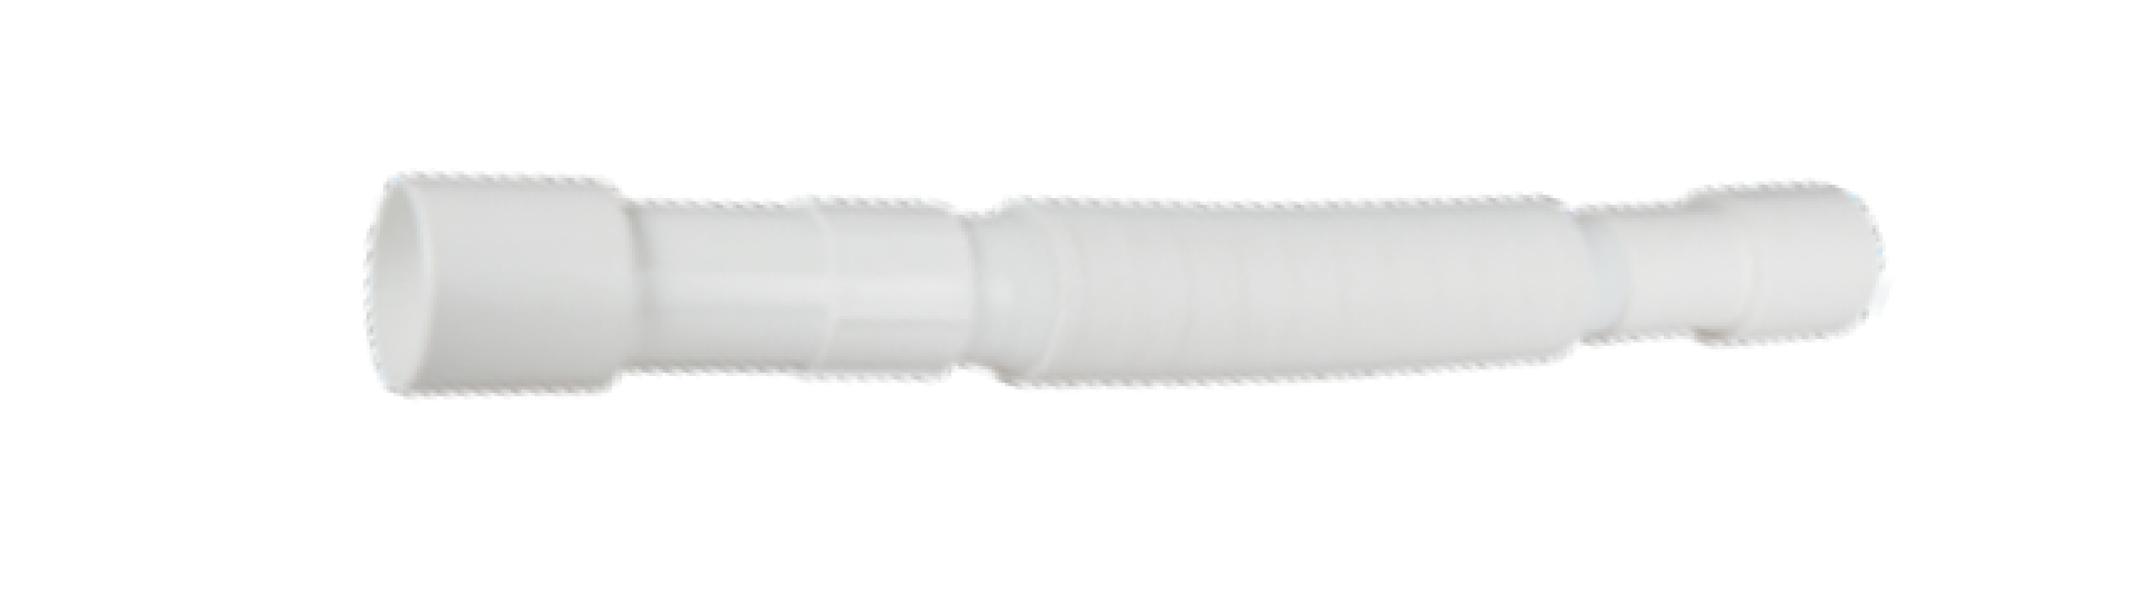 Tubo flessibile universale Idro-Bric diametro 32mm da 40cm bianco - SMK-P0771 32 01